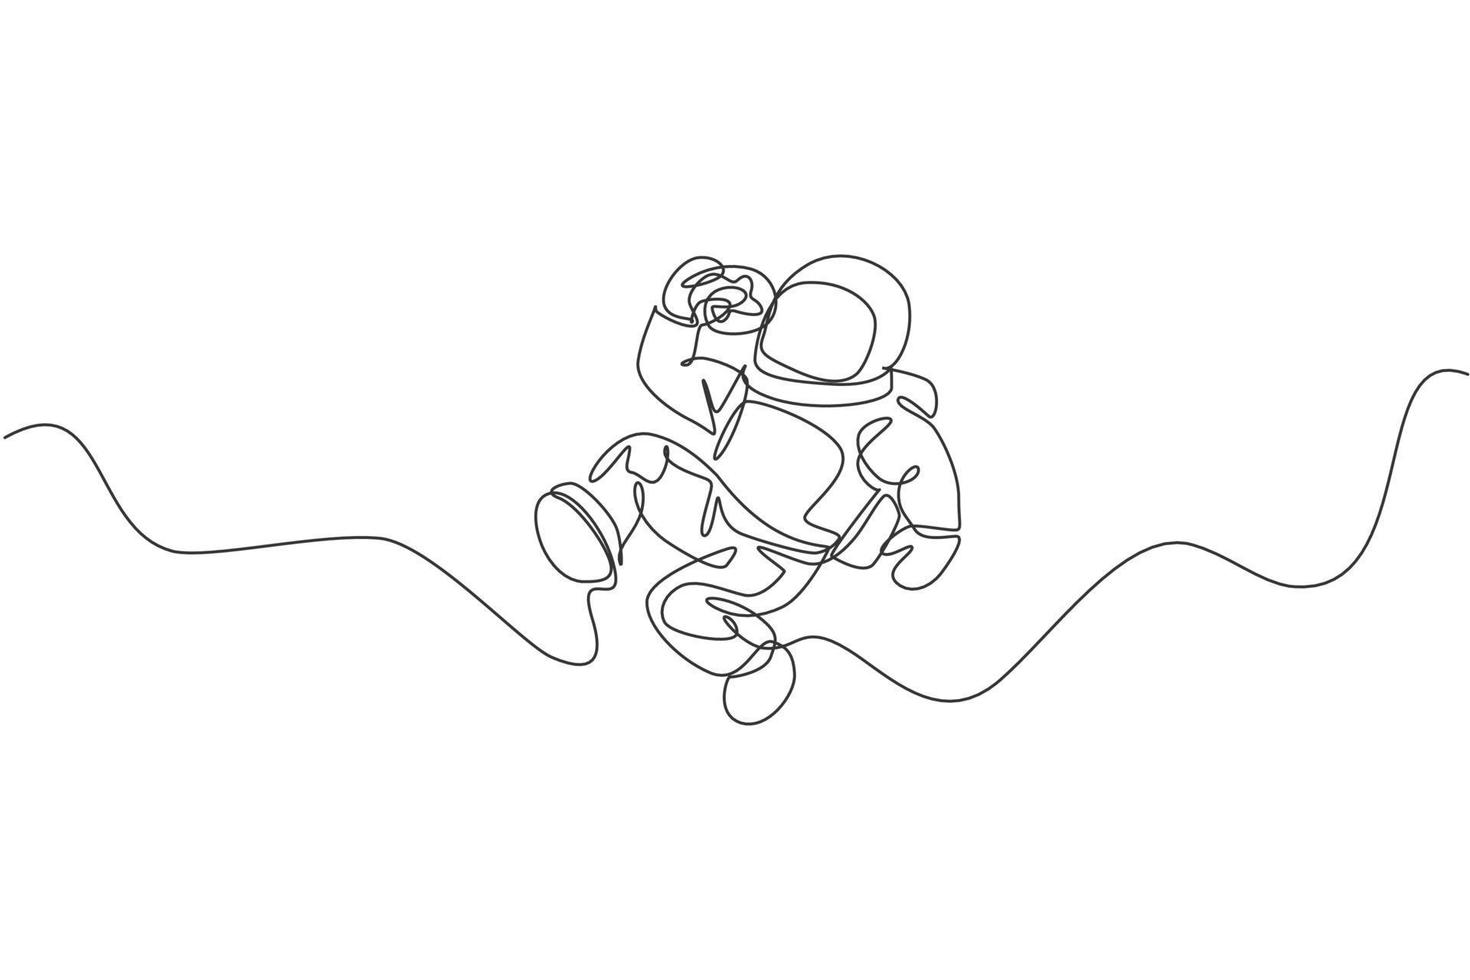 desenho de linha única contínua de astronauta relaxando e comendo rosquinha doce com cobertura na galáxia nebulosa. ficção de fantasia do conceito de vida do espaço sideral. tendência de uma linha desenhar design gráfico ilustração vetorial vetor